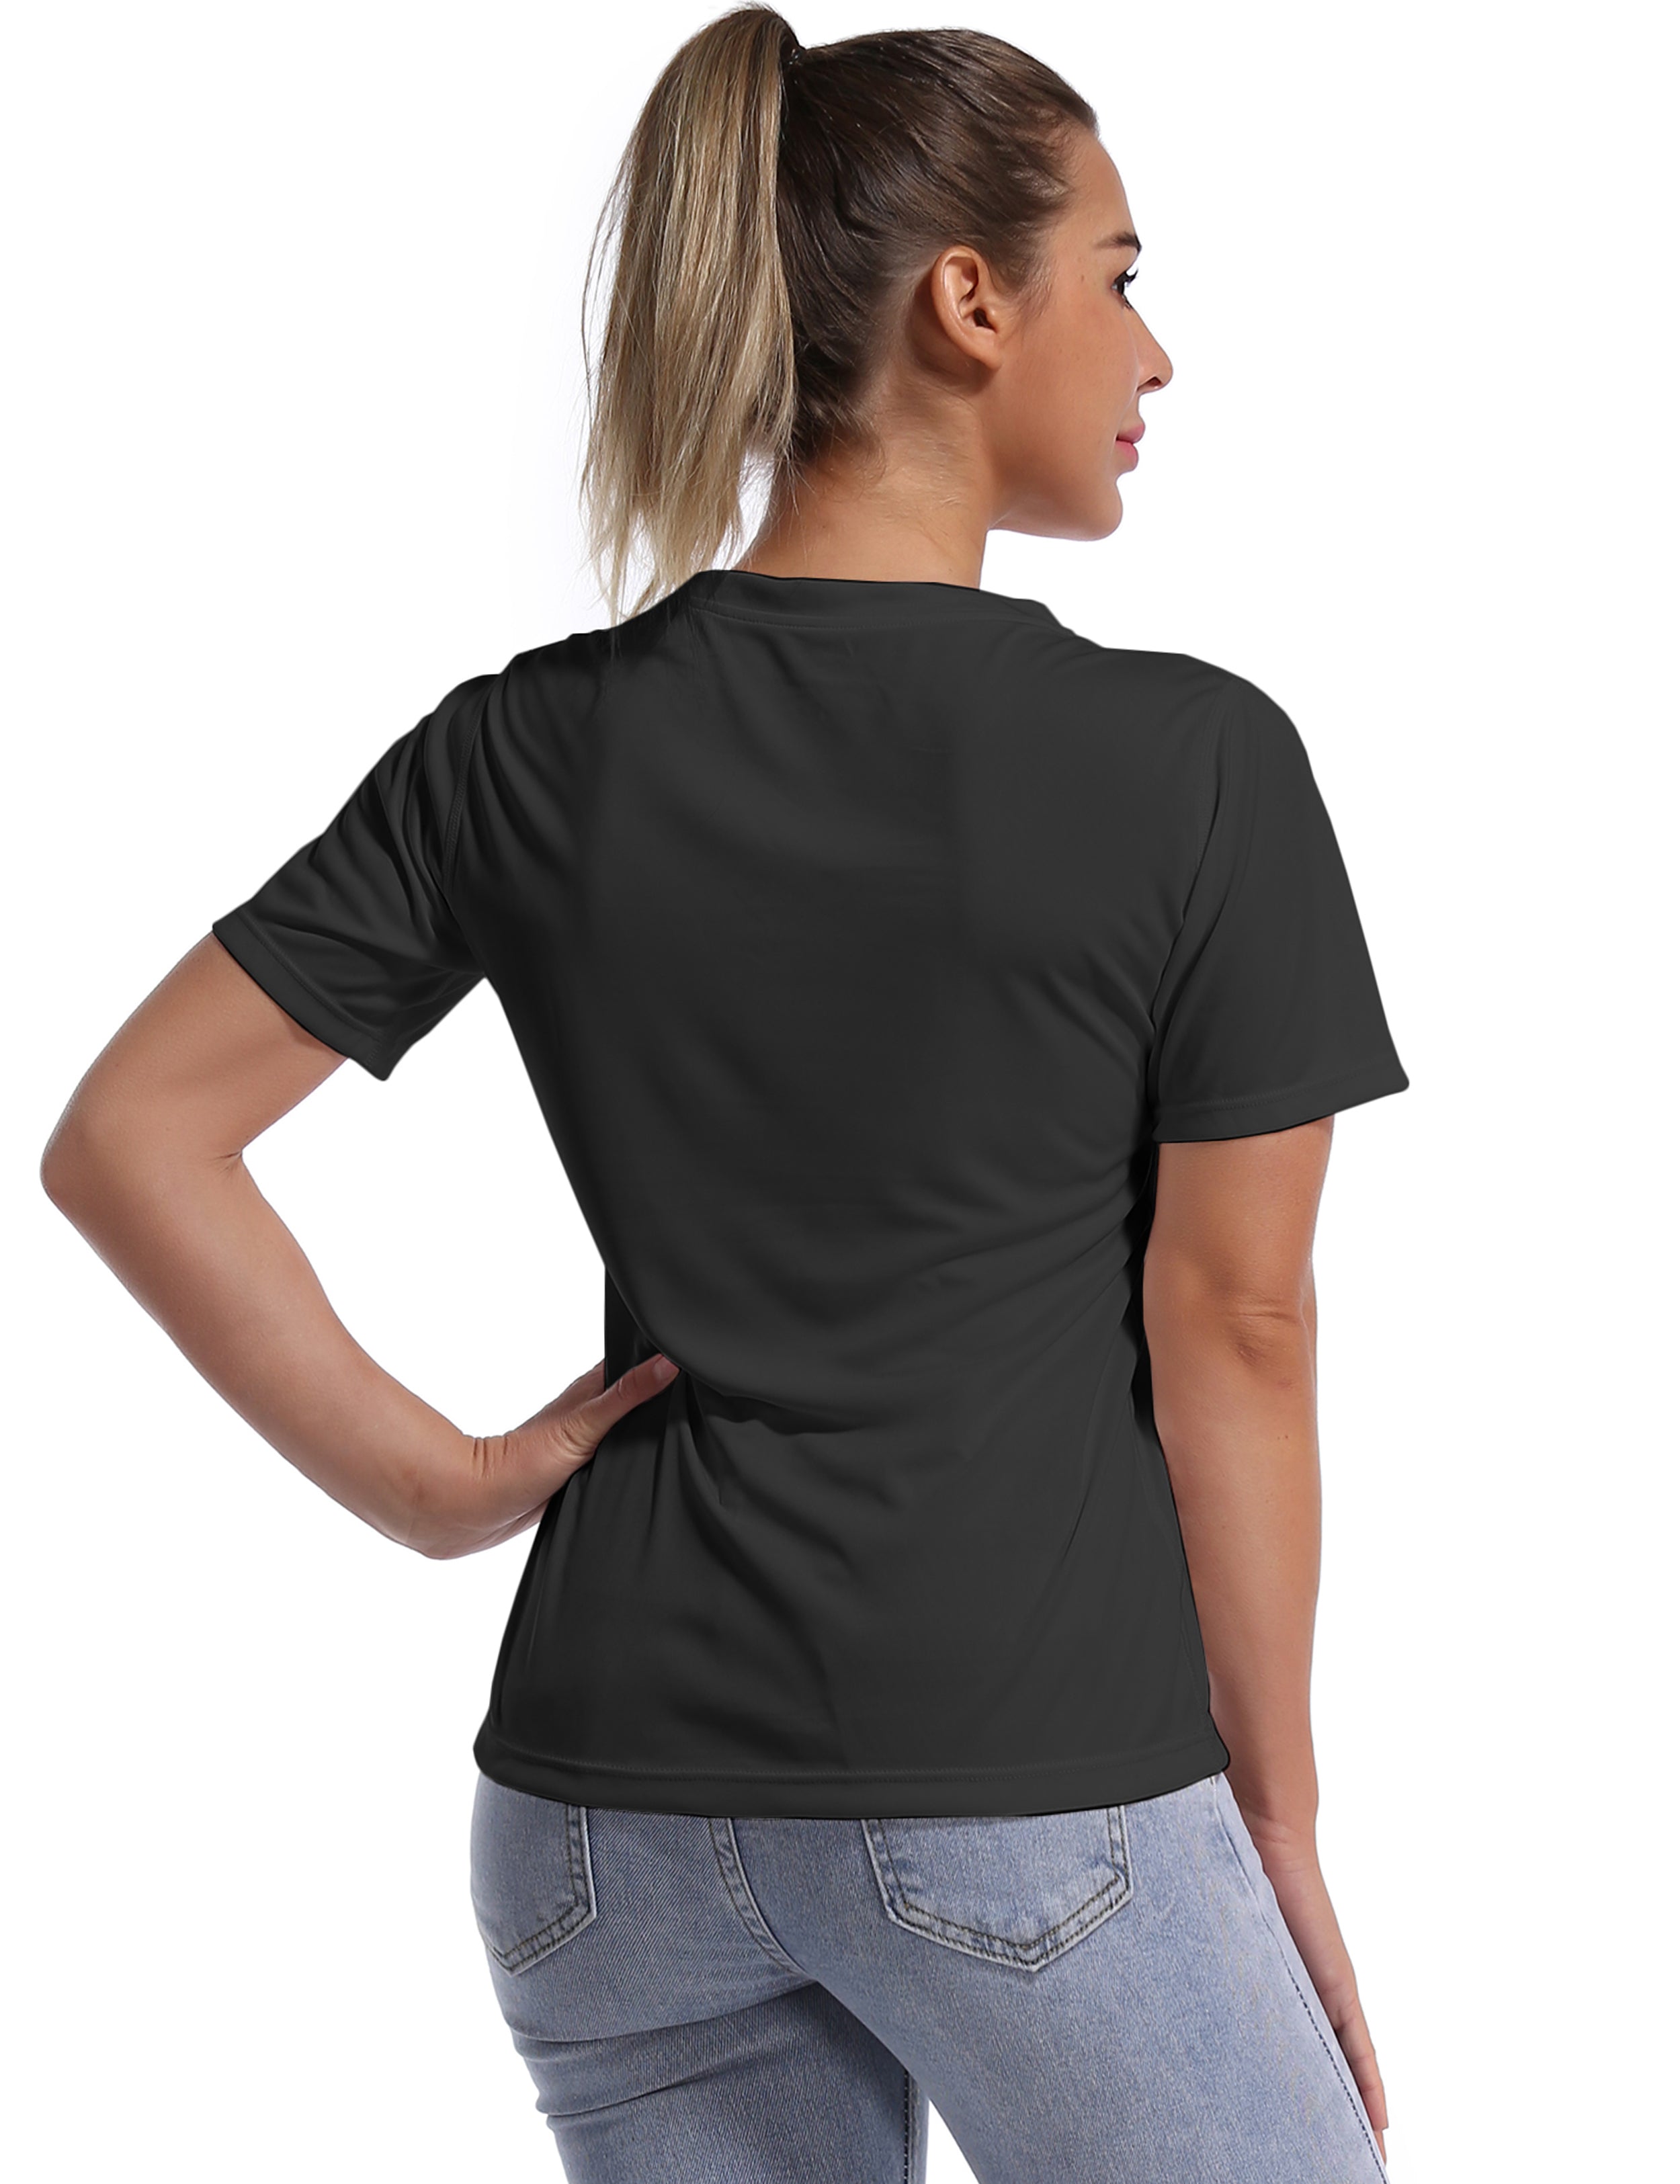 V-Neck Short Sleeve Athletic Shirts black_Golf